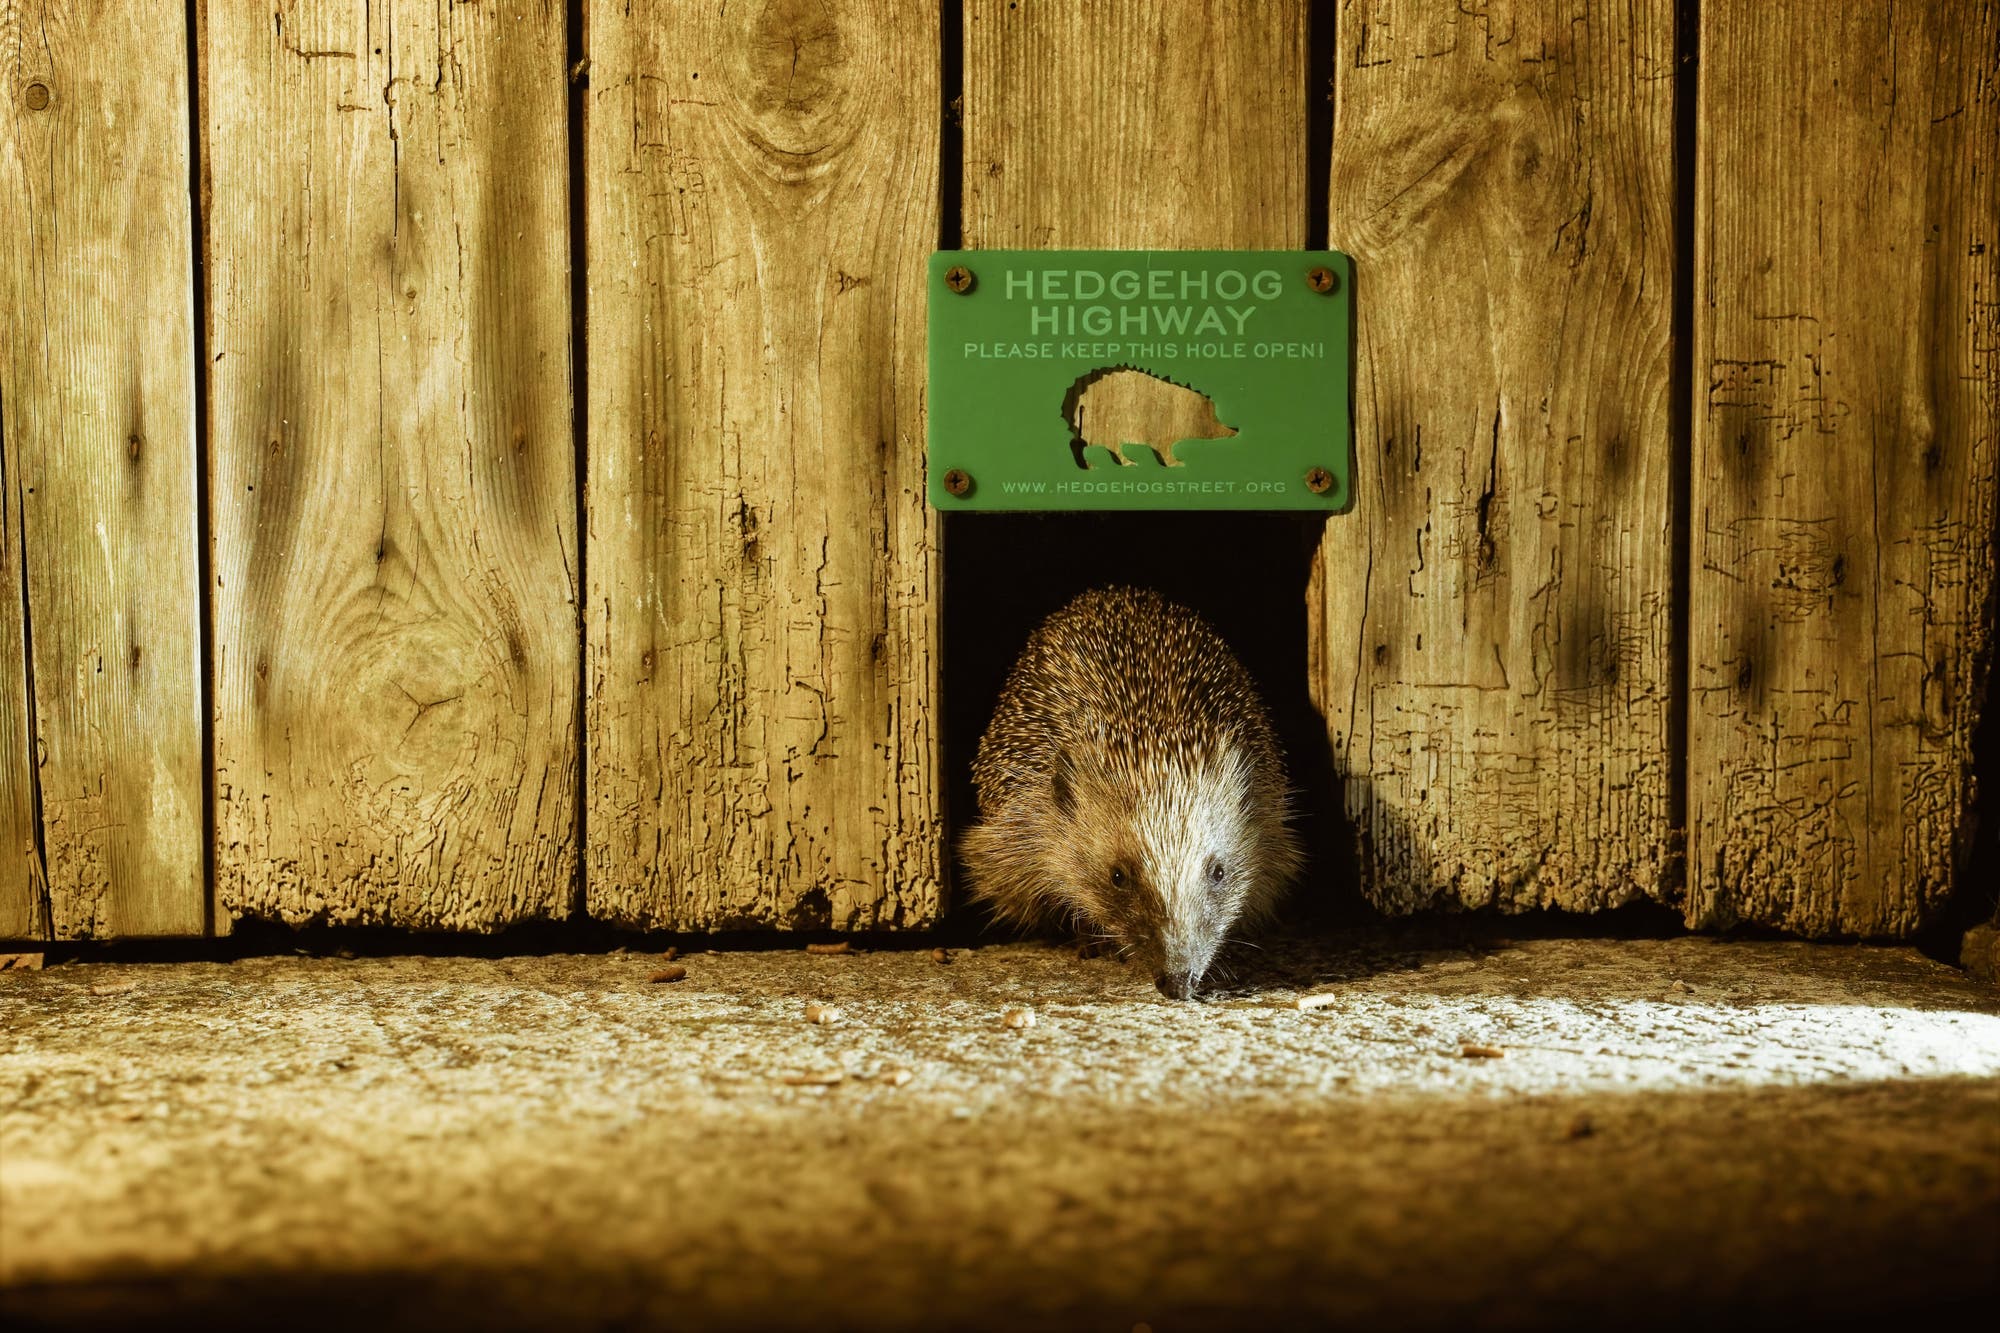 Igel kriecht durch ein Loch in einem Lattenzaun, darüber steht »Hedgehog Highway«